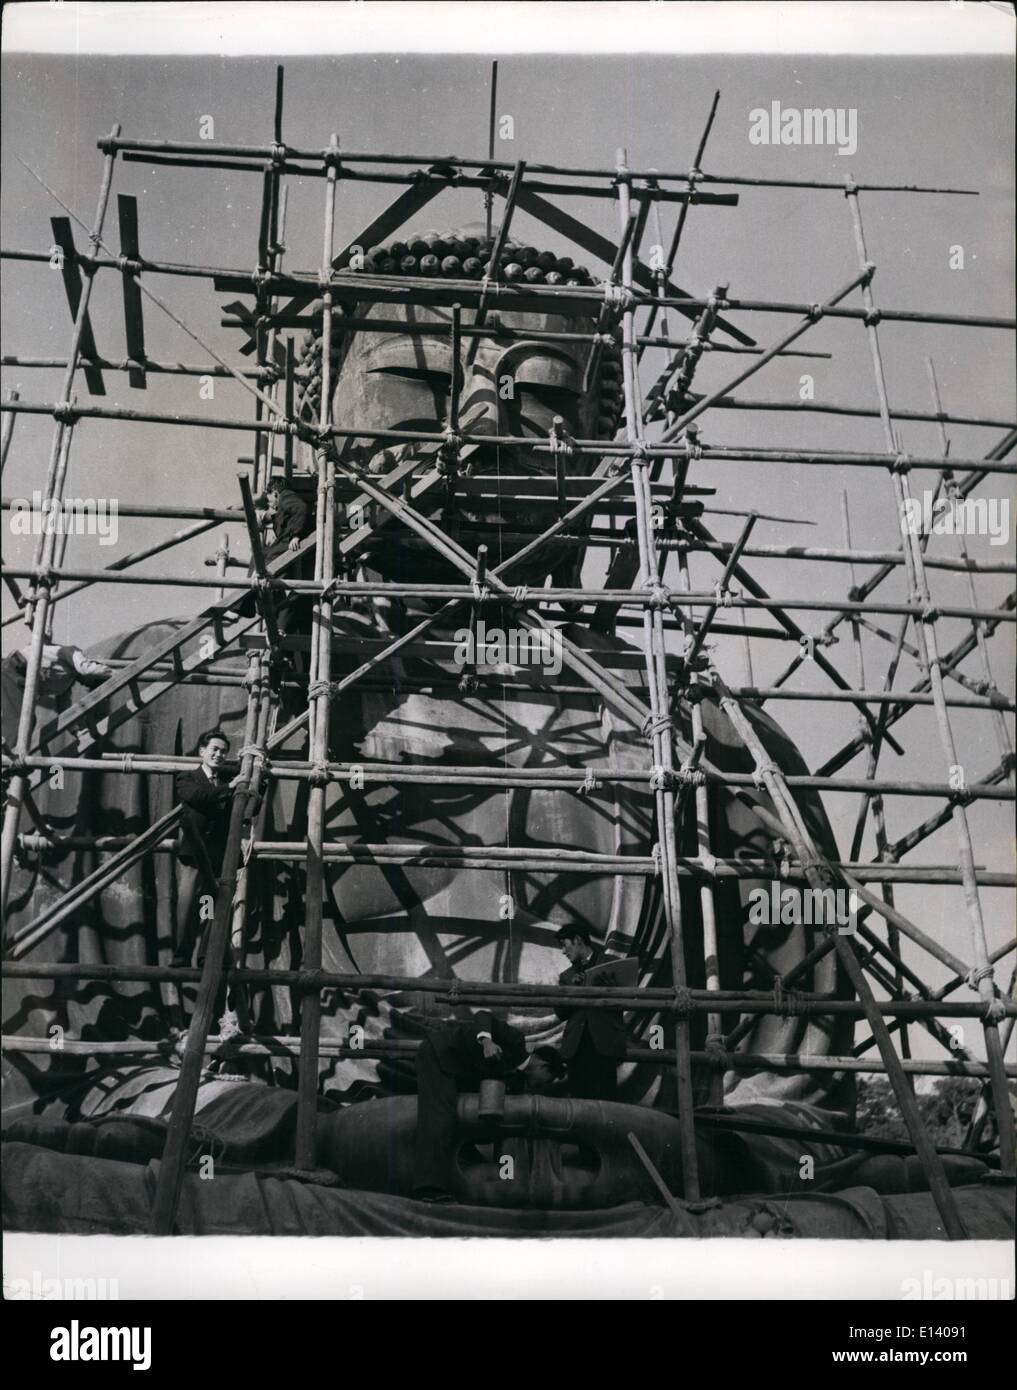 27 mars 2012 - Nettoyage de printemps un 700-Year-Old Bouddha. Le ''Amida Bouddha'' inspiré d'un poème de Kipling est de 36 pieds de haut l'imposante statue en bronze de Bouddha Amida (seigneur de Boundless Light) érigée à Kamakura, au Japon, il y a 705 ans, c'est que d'avoir une inspection de la structure, et de nettoyage - la première depuis de nombreuses années. Il sera alors désigné un trésor national. Le 38-pieds-haute statue a été coulée en 1252 par Ono Goroemon, célèbre sculpture du 13ème siècle. Il a été enfermé dans un grand jamais remplacés. La hauteur du Bouddha de sa base est de 53 pieds. Sa largeur est de 16 pieds, et la profondeur est de 9 pieds Banque D'Images